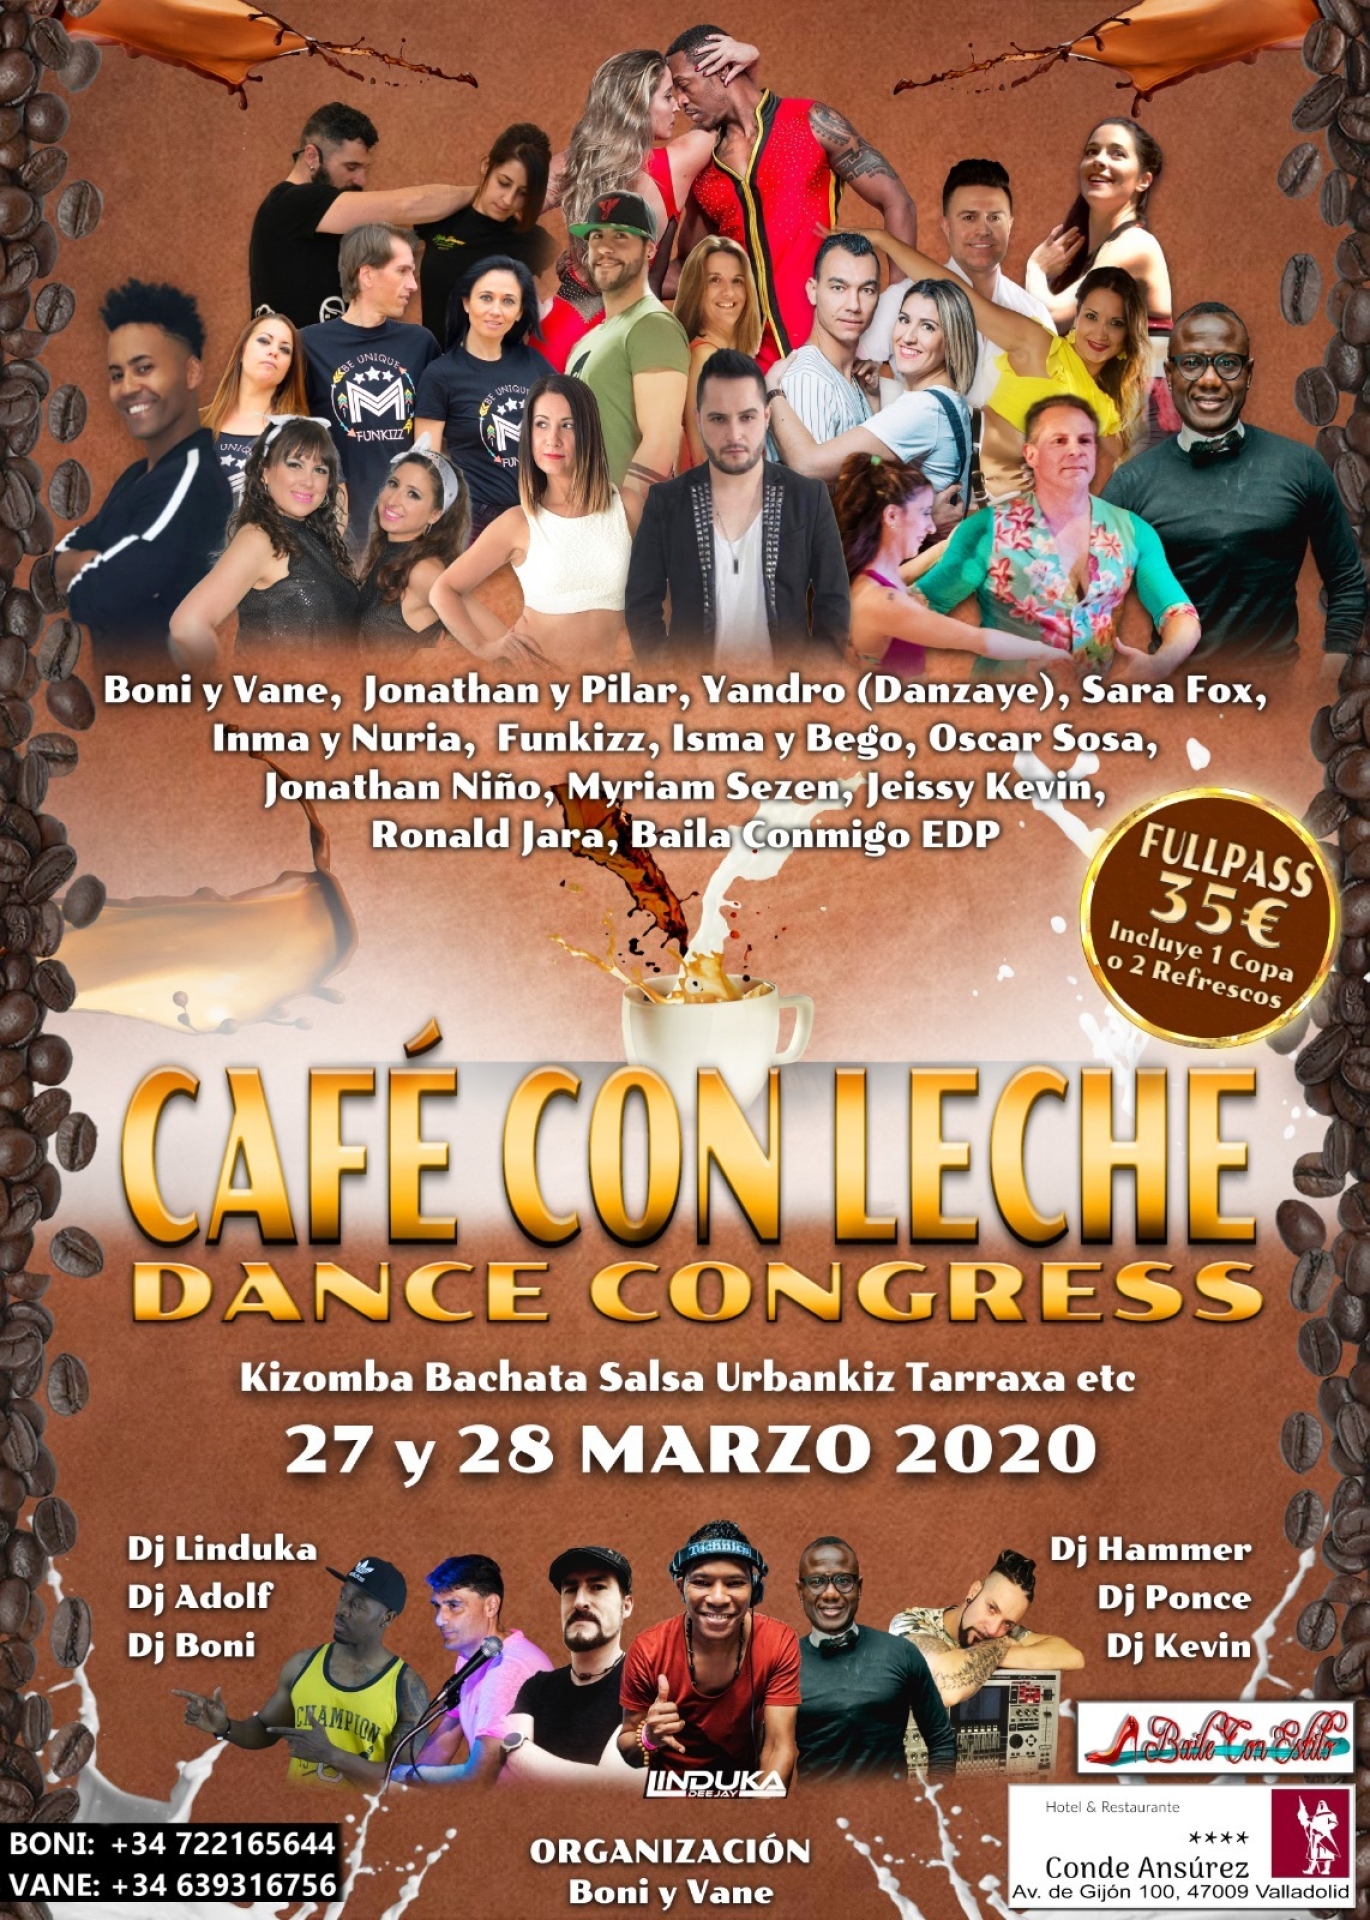 Café con Leche Dance Congress Marzo 2020 go&dance